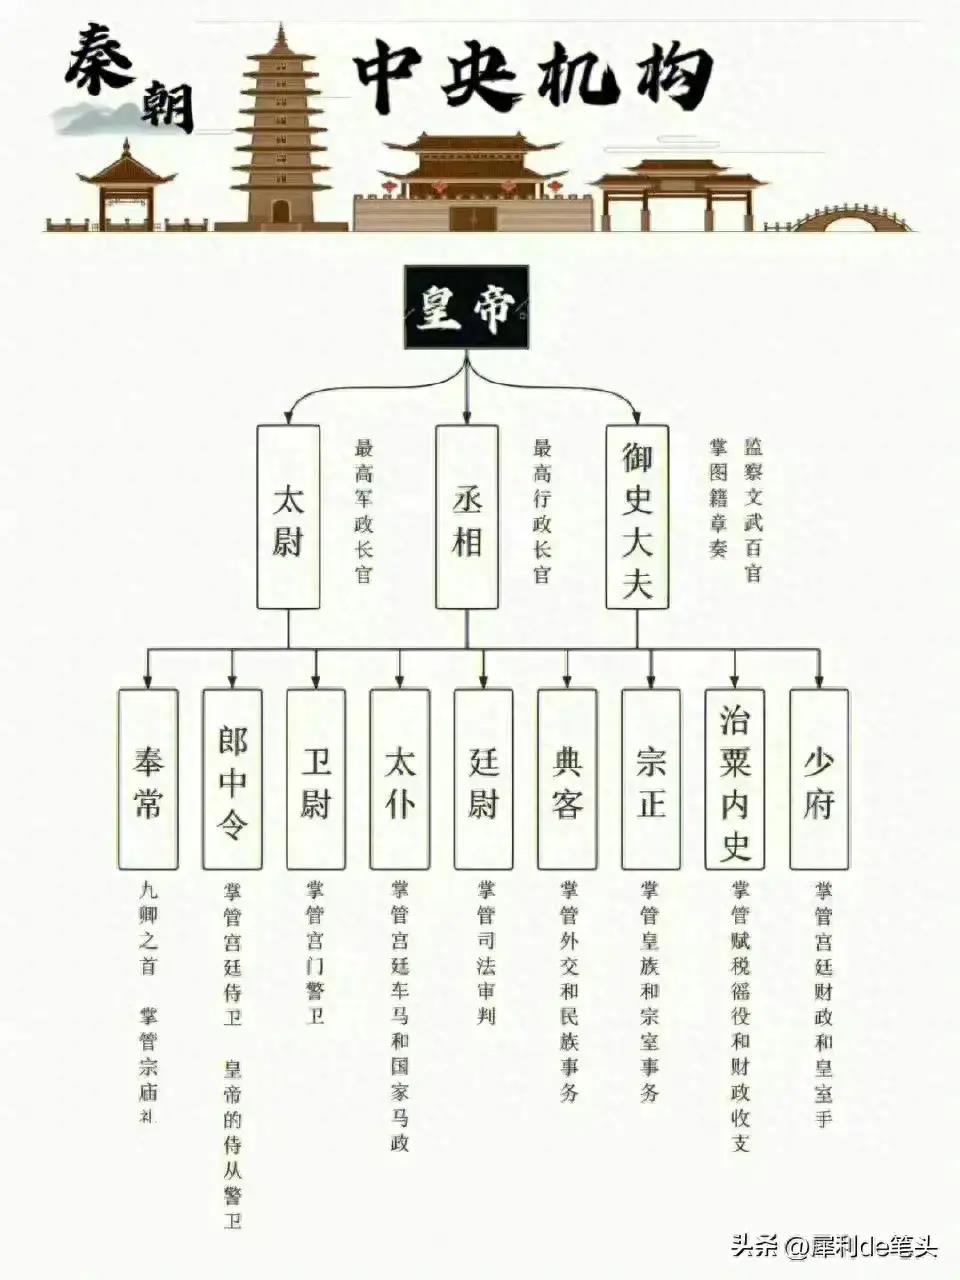 中国历代朝廷行政体制